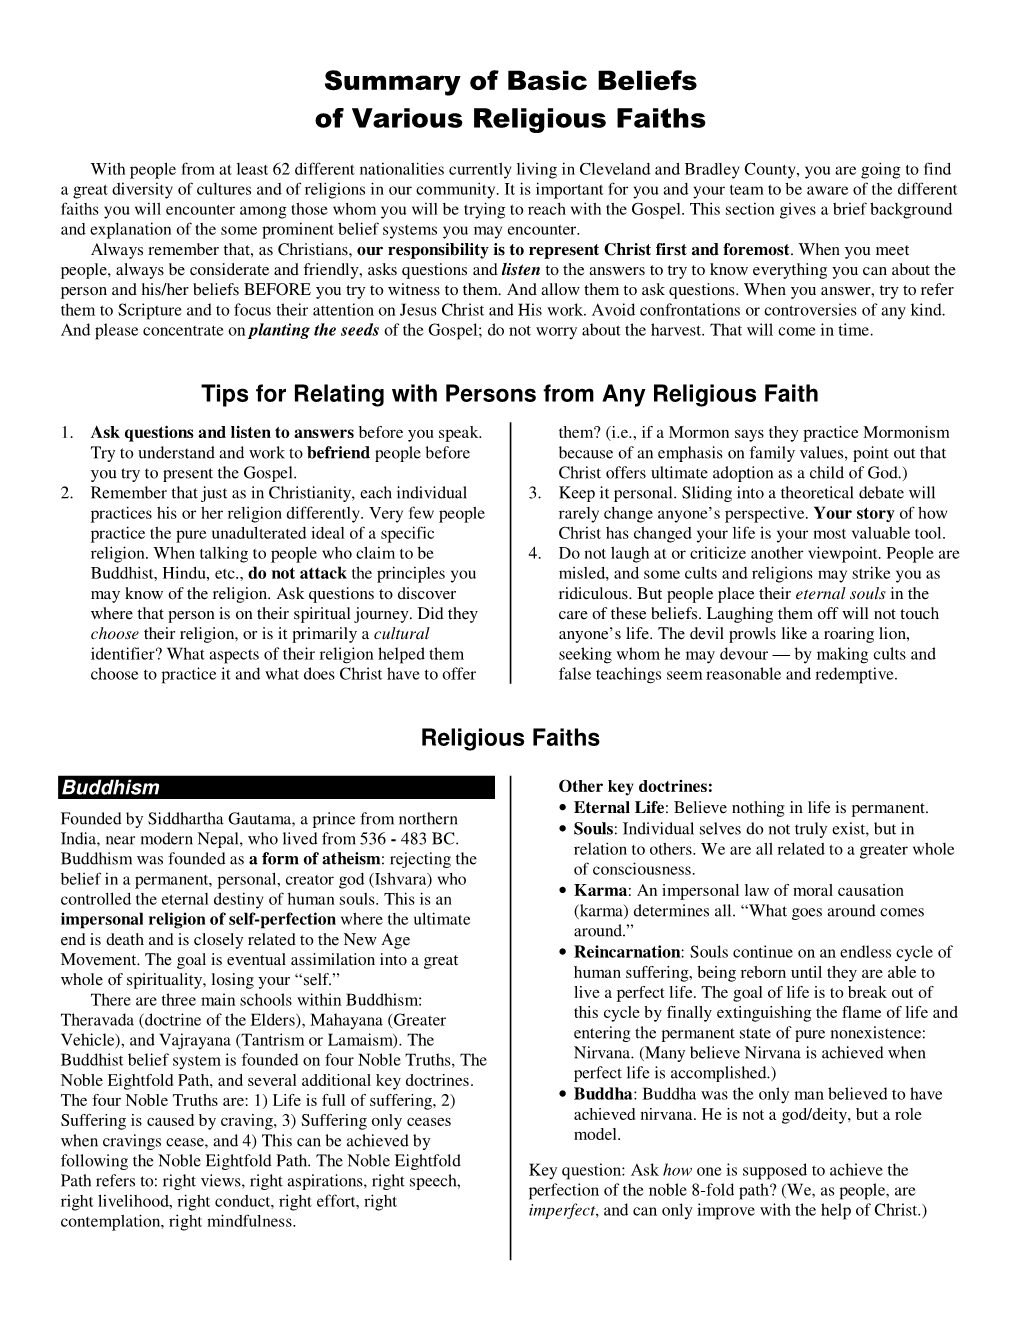 Summary of Basic Beliefs of Various Religious Faiths